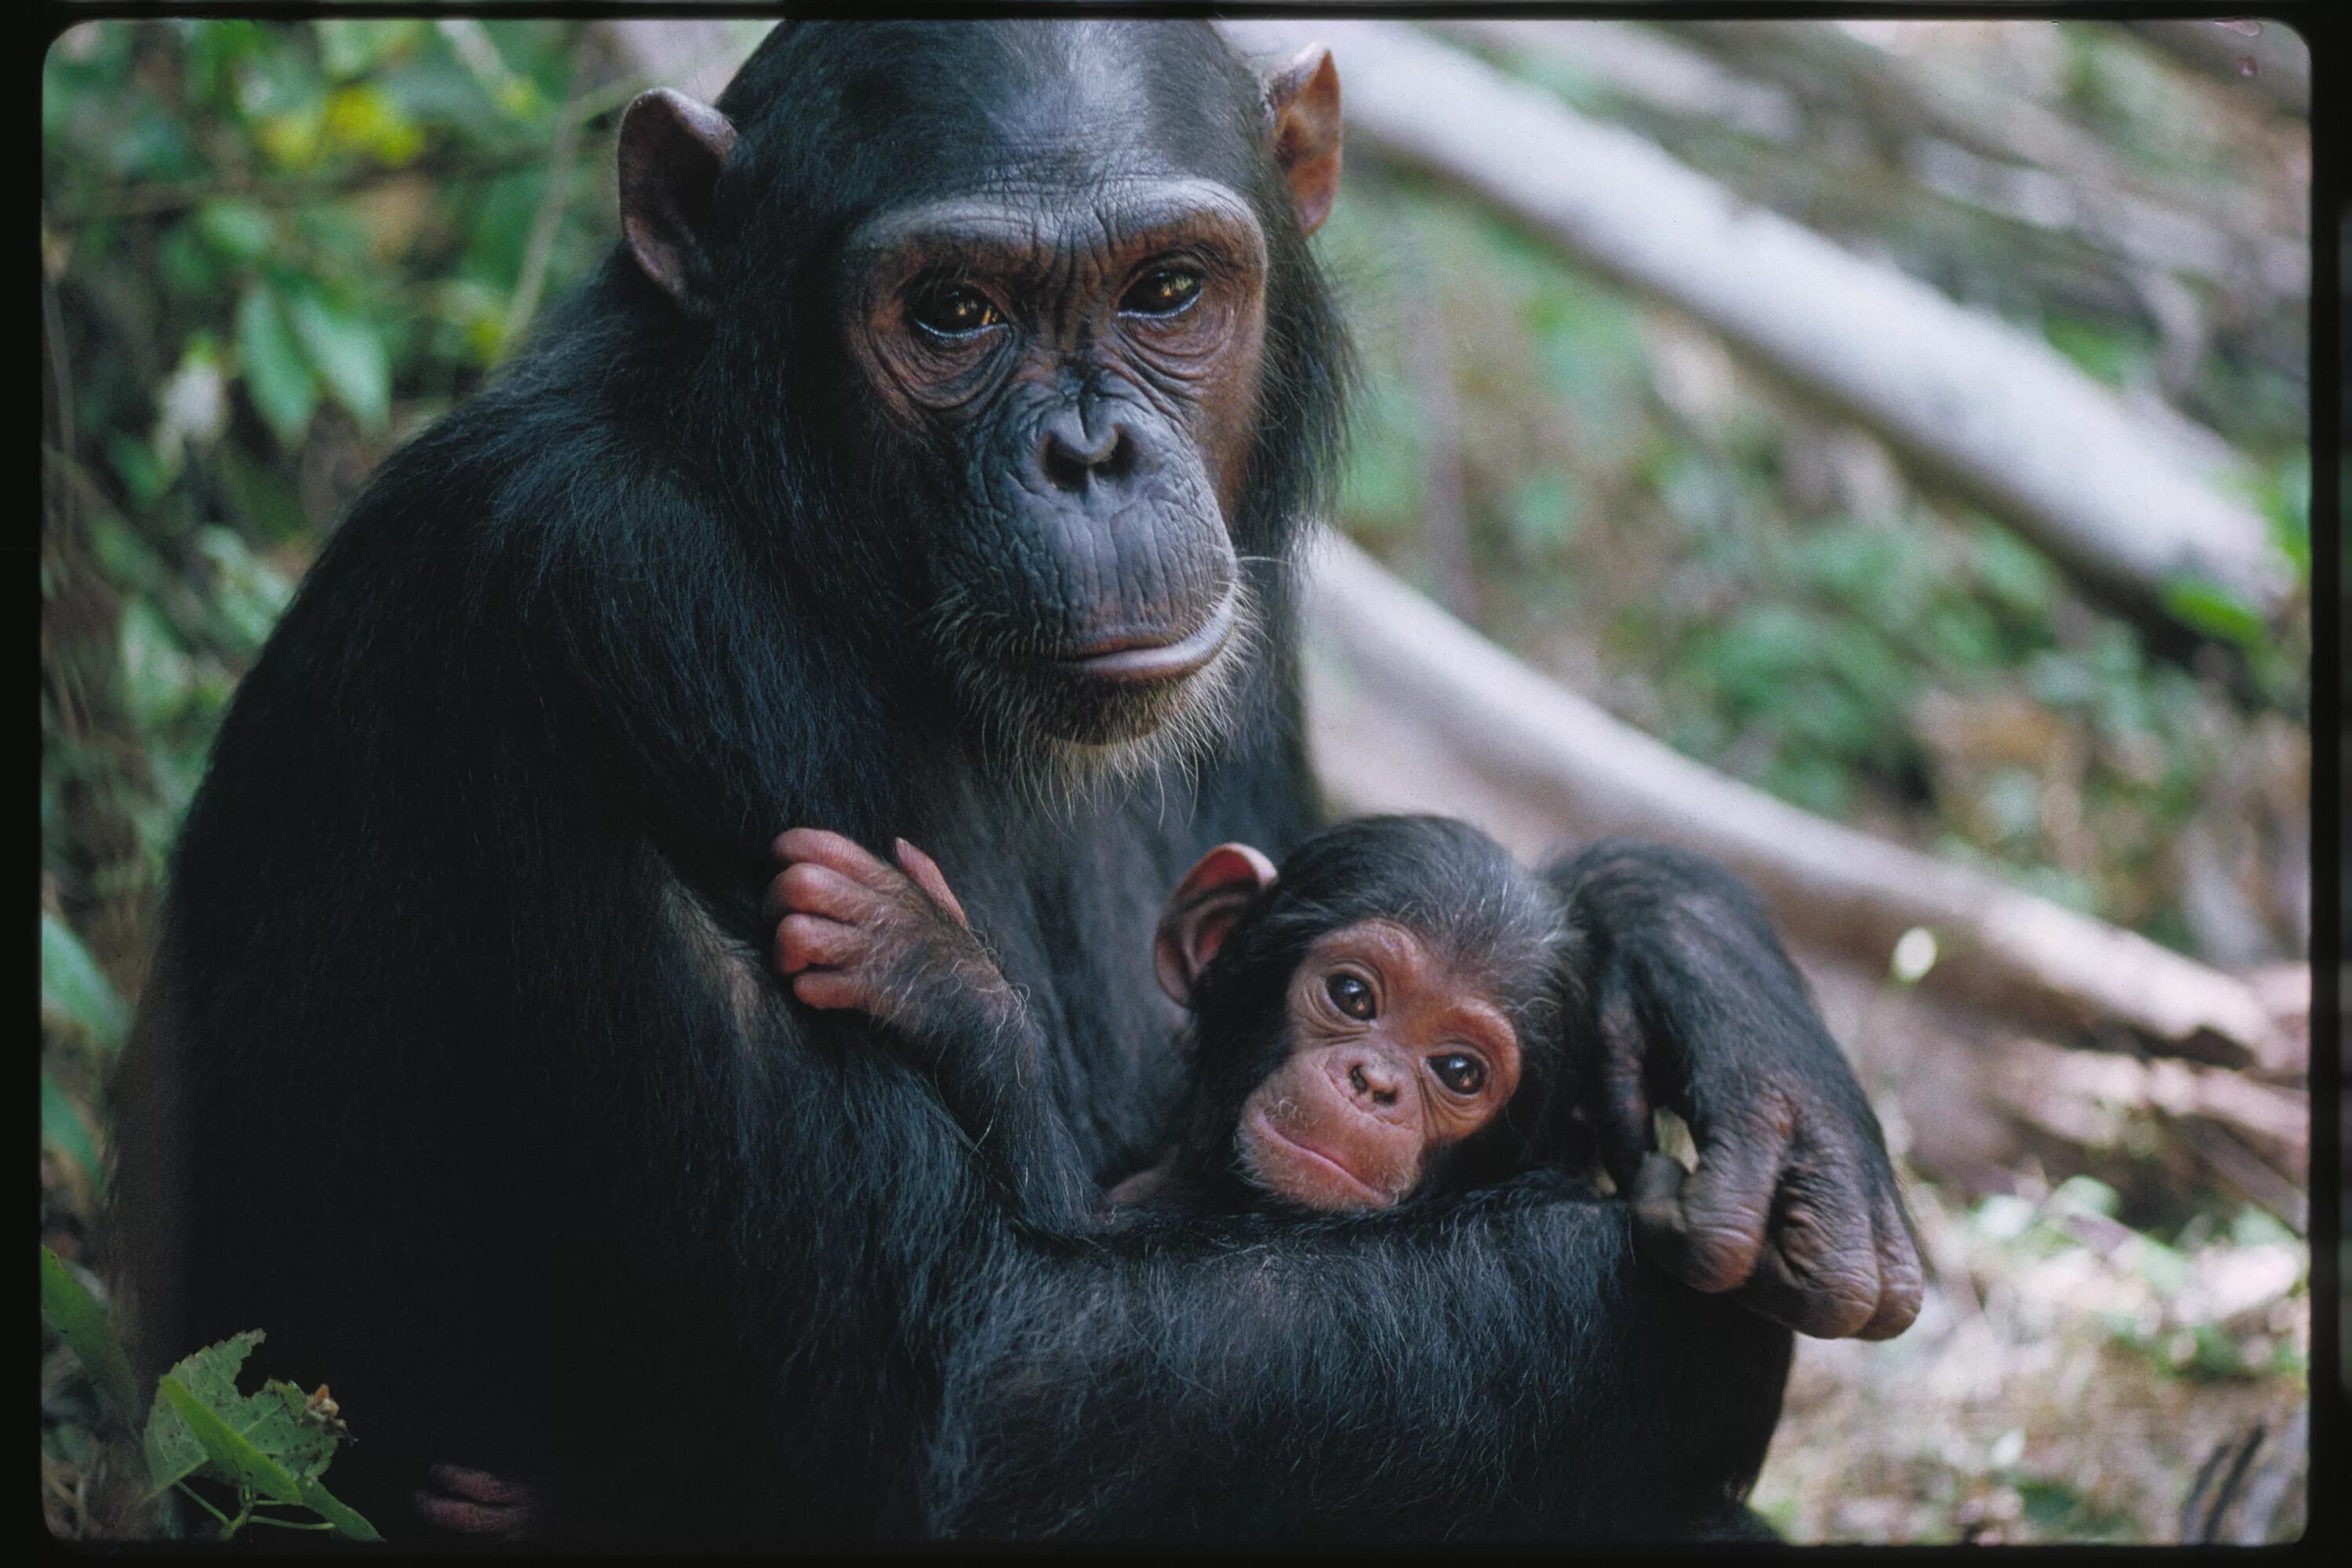 Обезьяны 1 класс. Шимпанзе бонобо. Шимпанзе человекообразные обезьяны. Детеныш обезьяны. Детеныш шимпанзе.